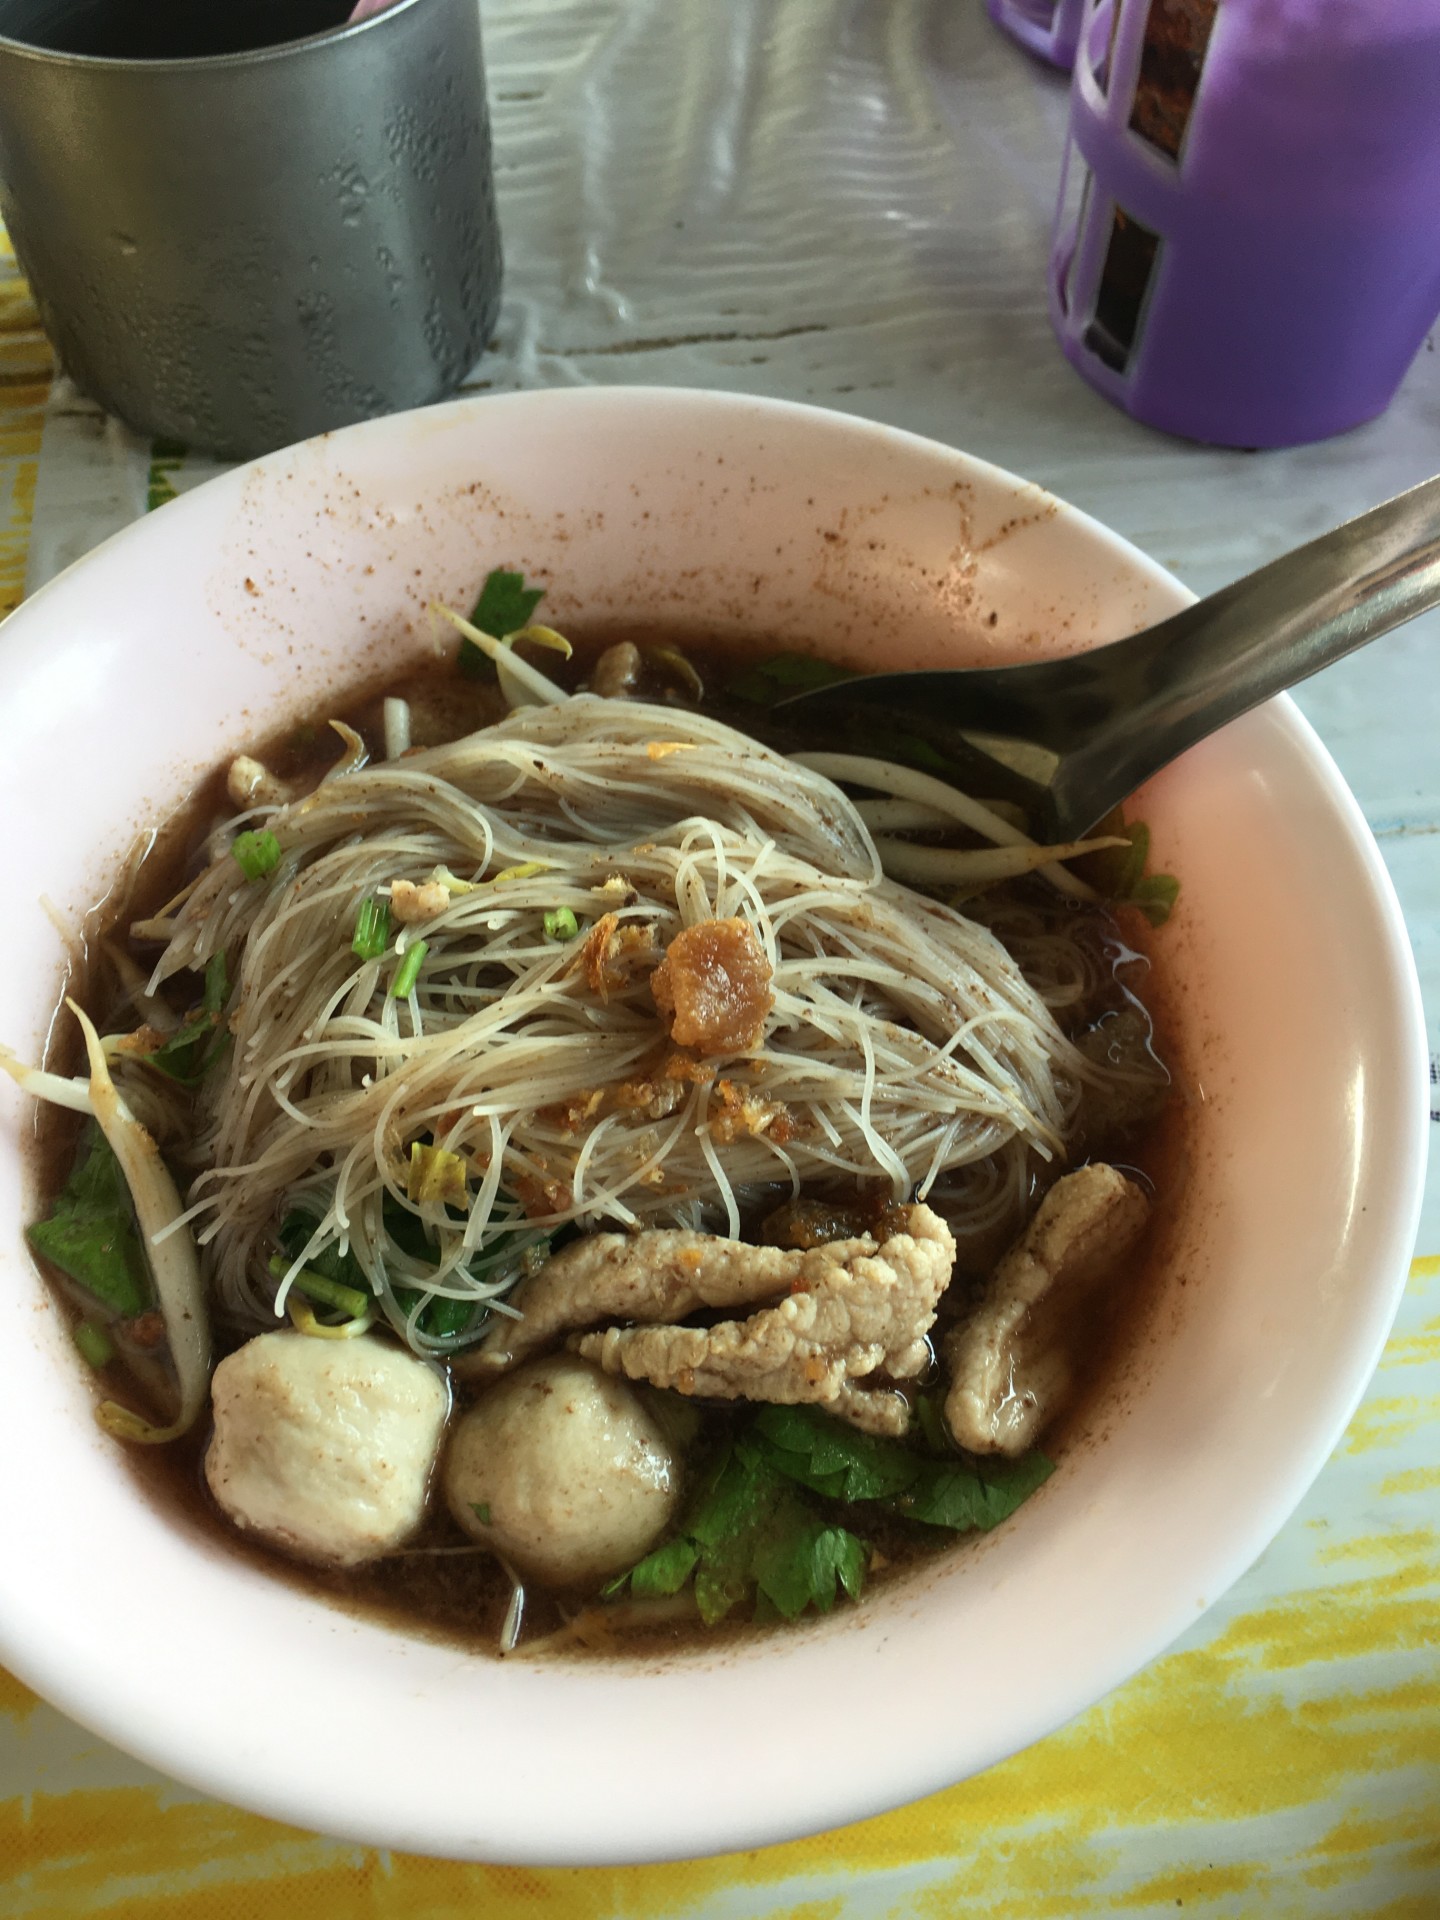 Thai beef noodle soup